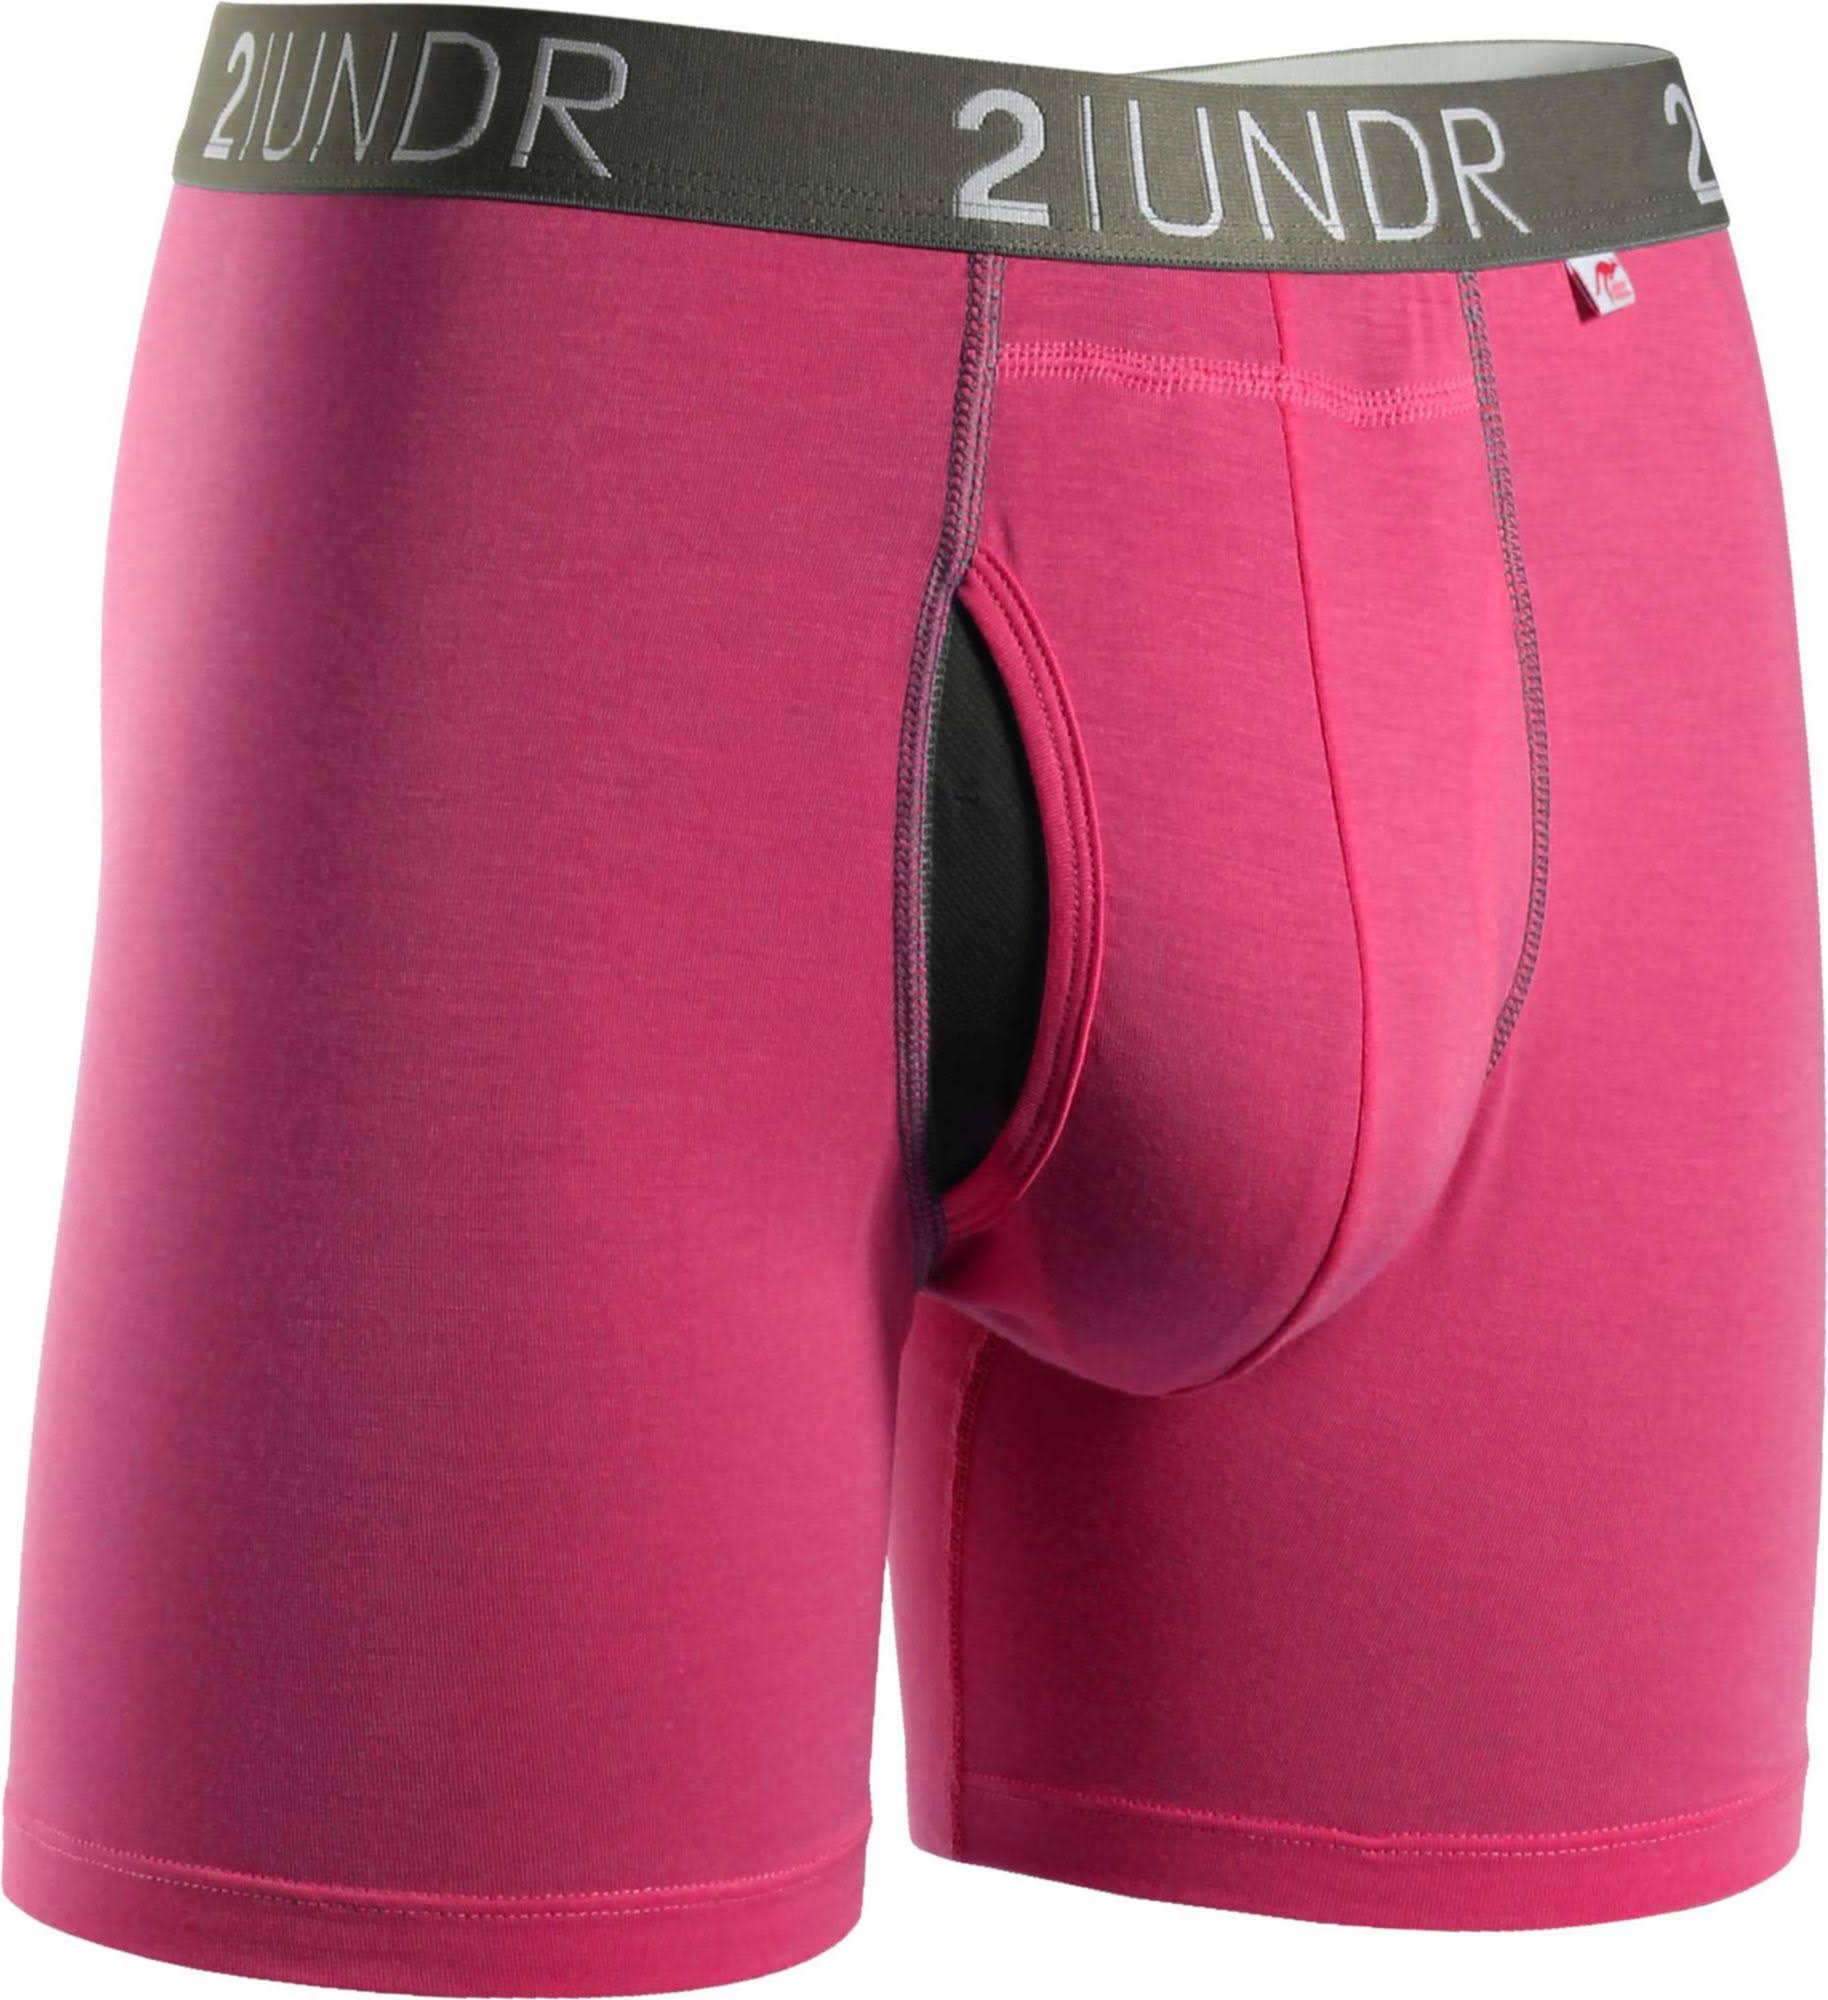 2UNDR Men's Swing Shift Boxer Briefs (Pink, Medium)